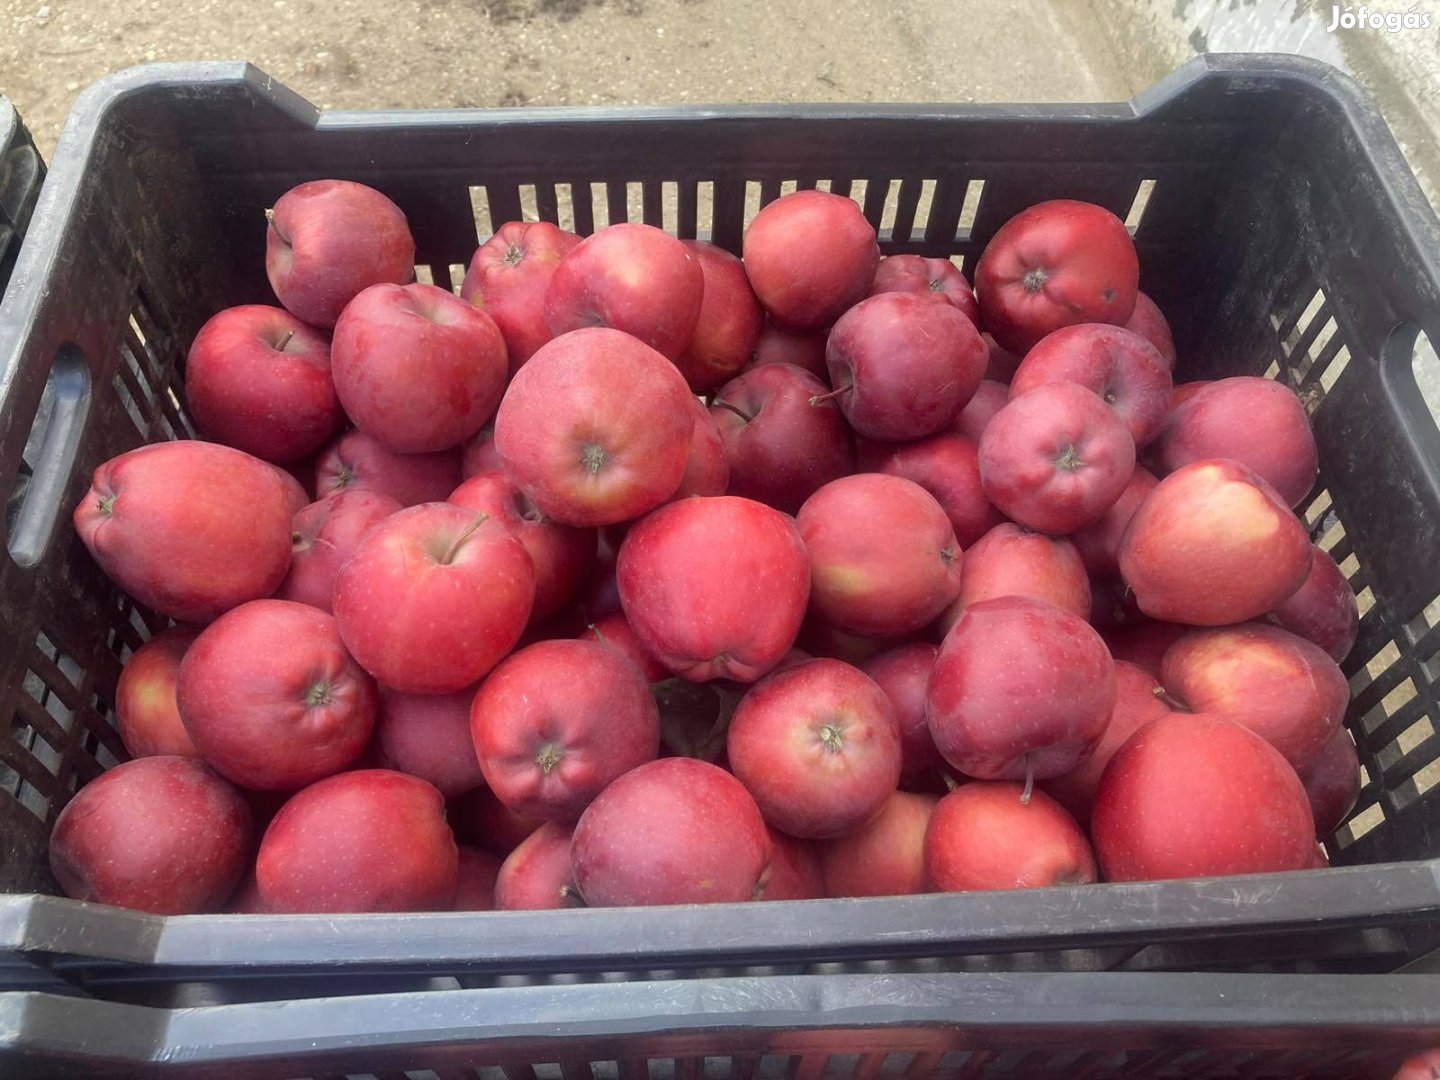 Red Chief alma nagy tételben 150 Ft/kg Gávavencsellőn eladó